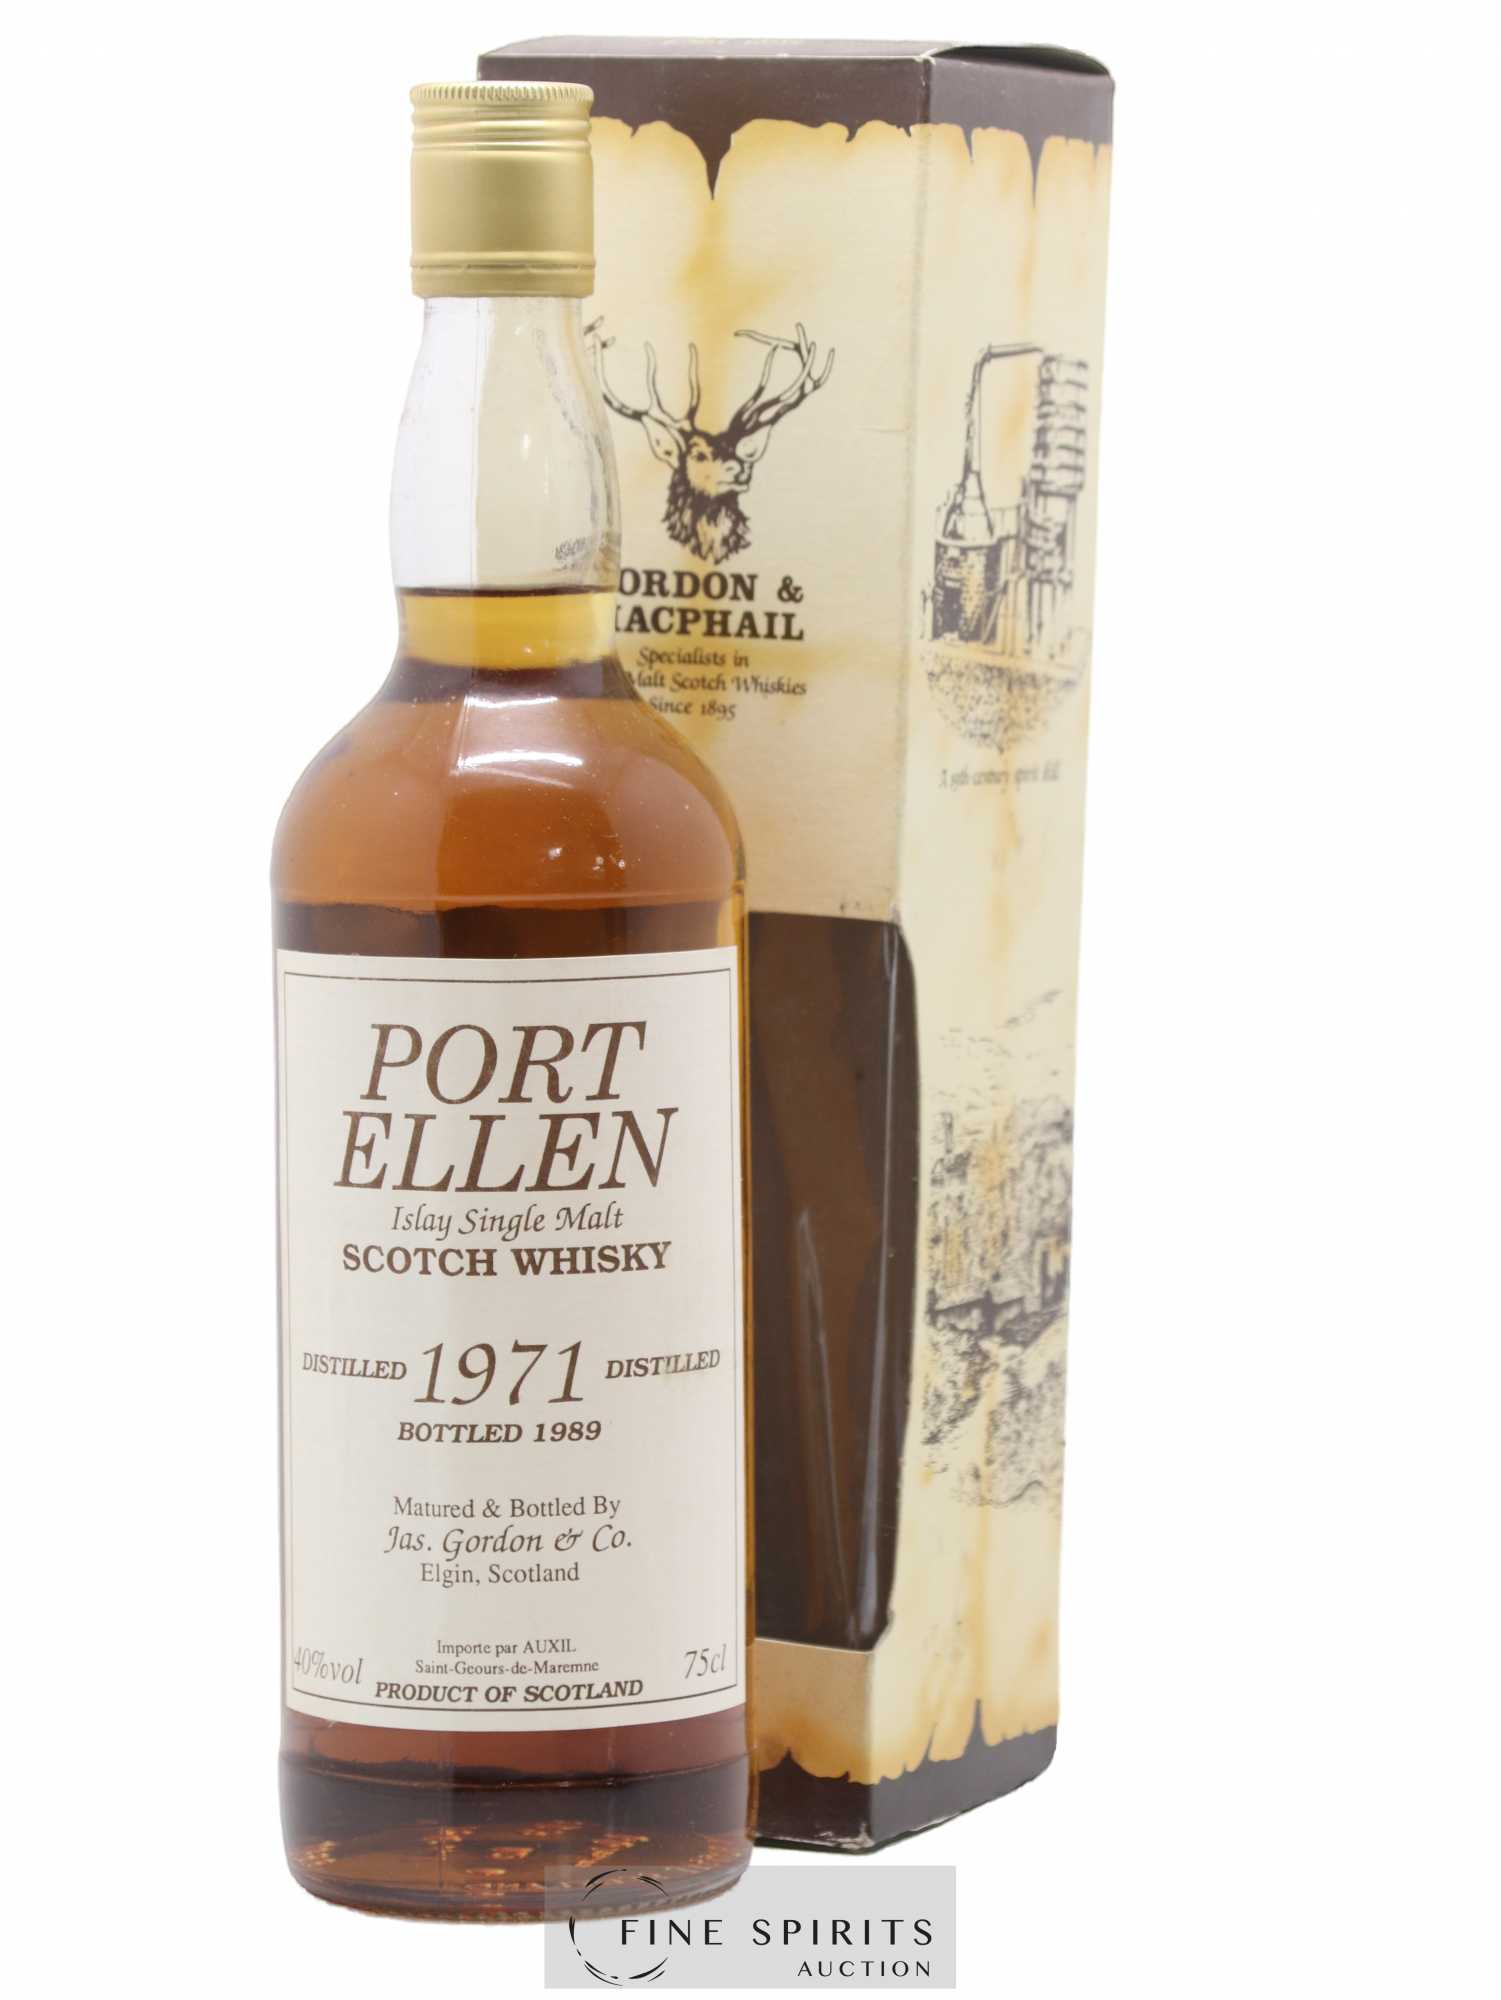 Port Ellen 1971 Jas. Gordon & Co. bottled 1989 